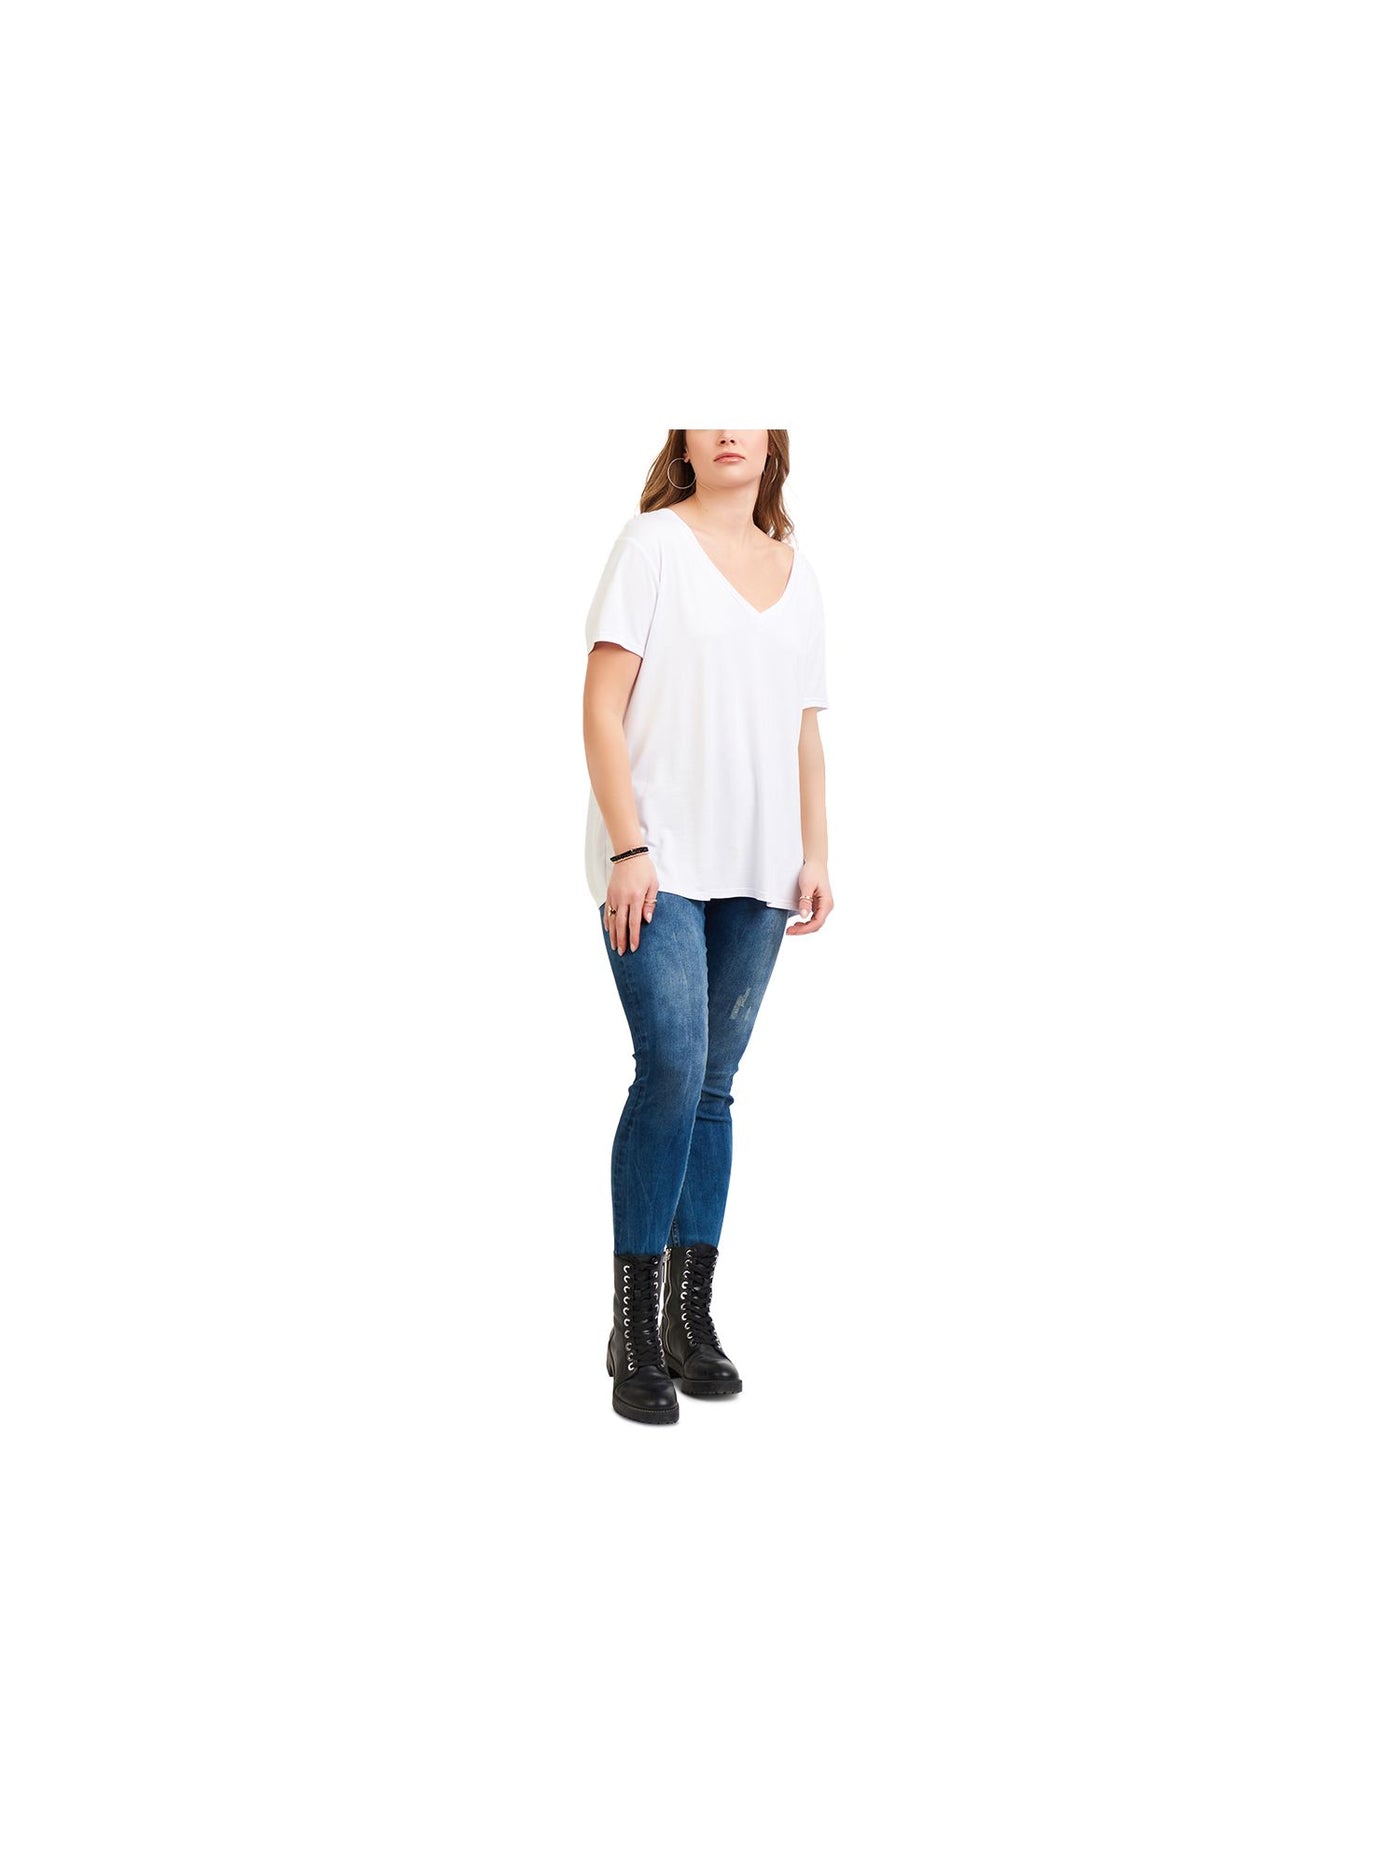 BLACK TAPE Womens White Short Sleeve V Neck T-Shirt M